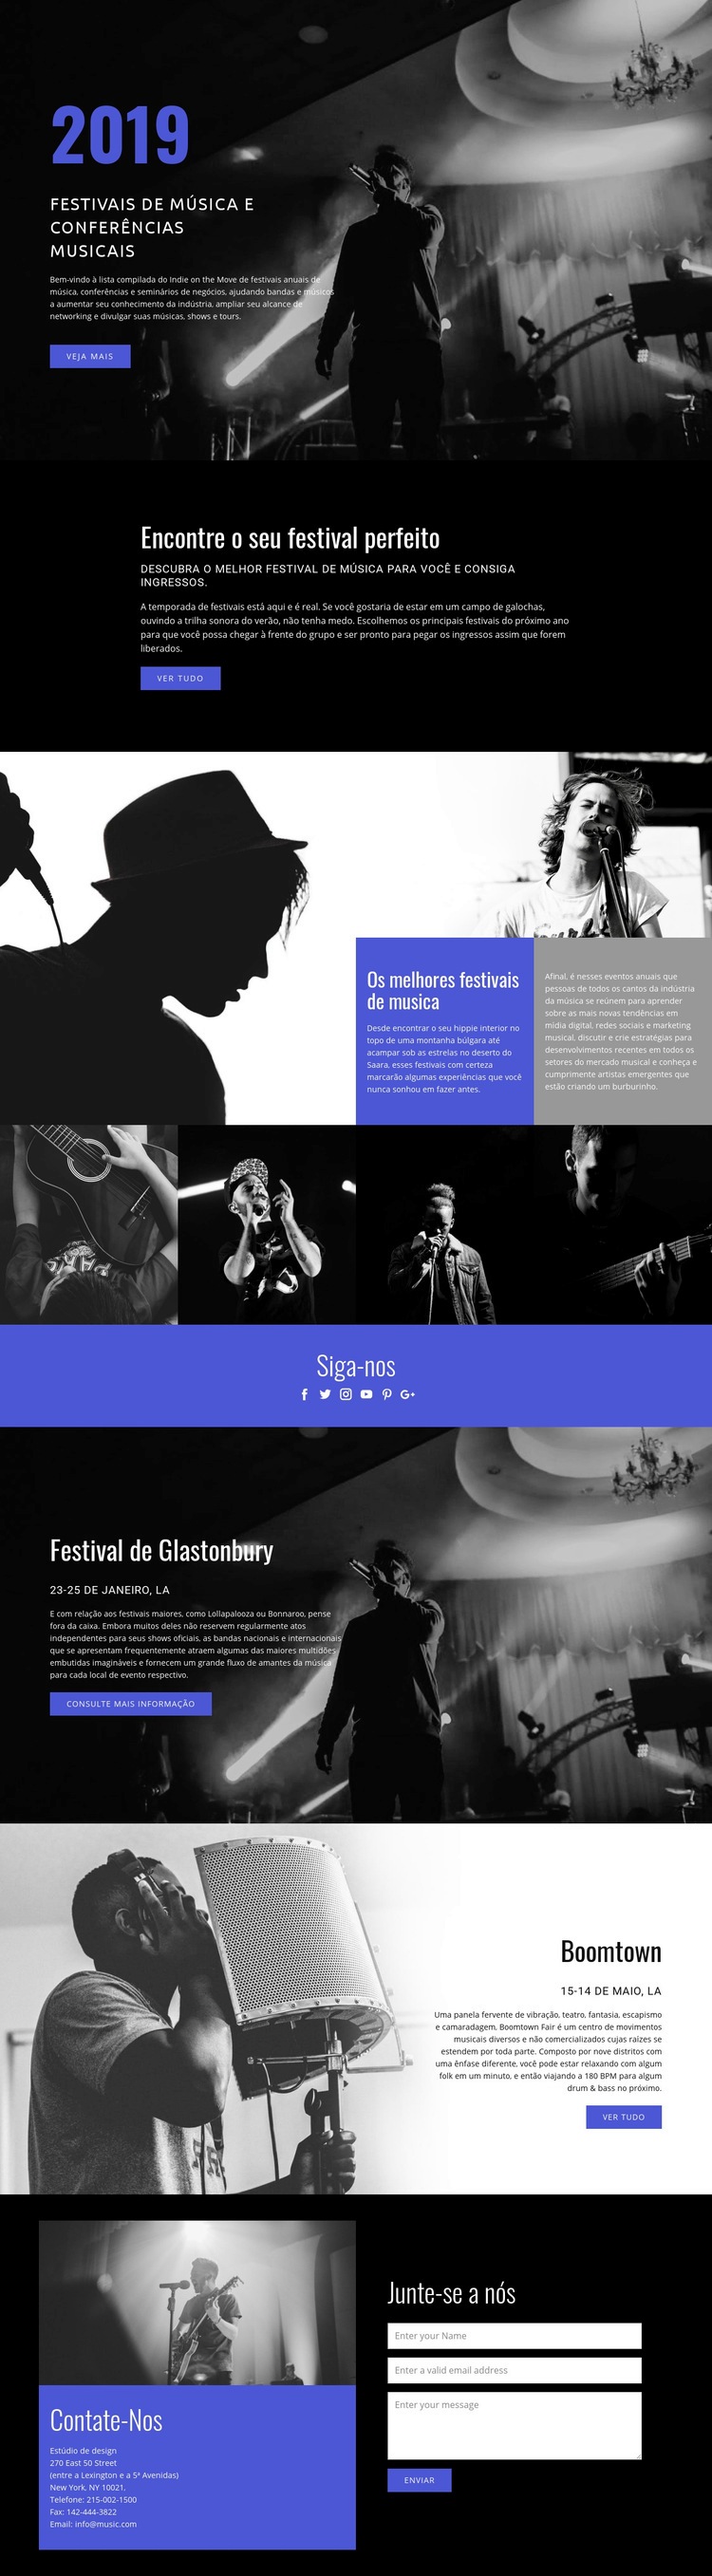 Festivais de música Landing Page